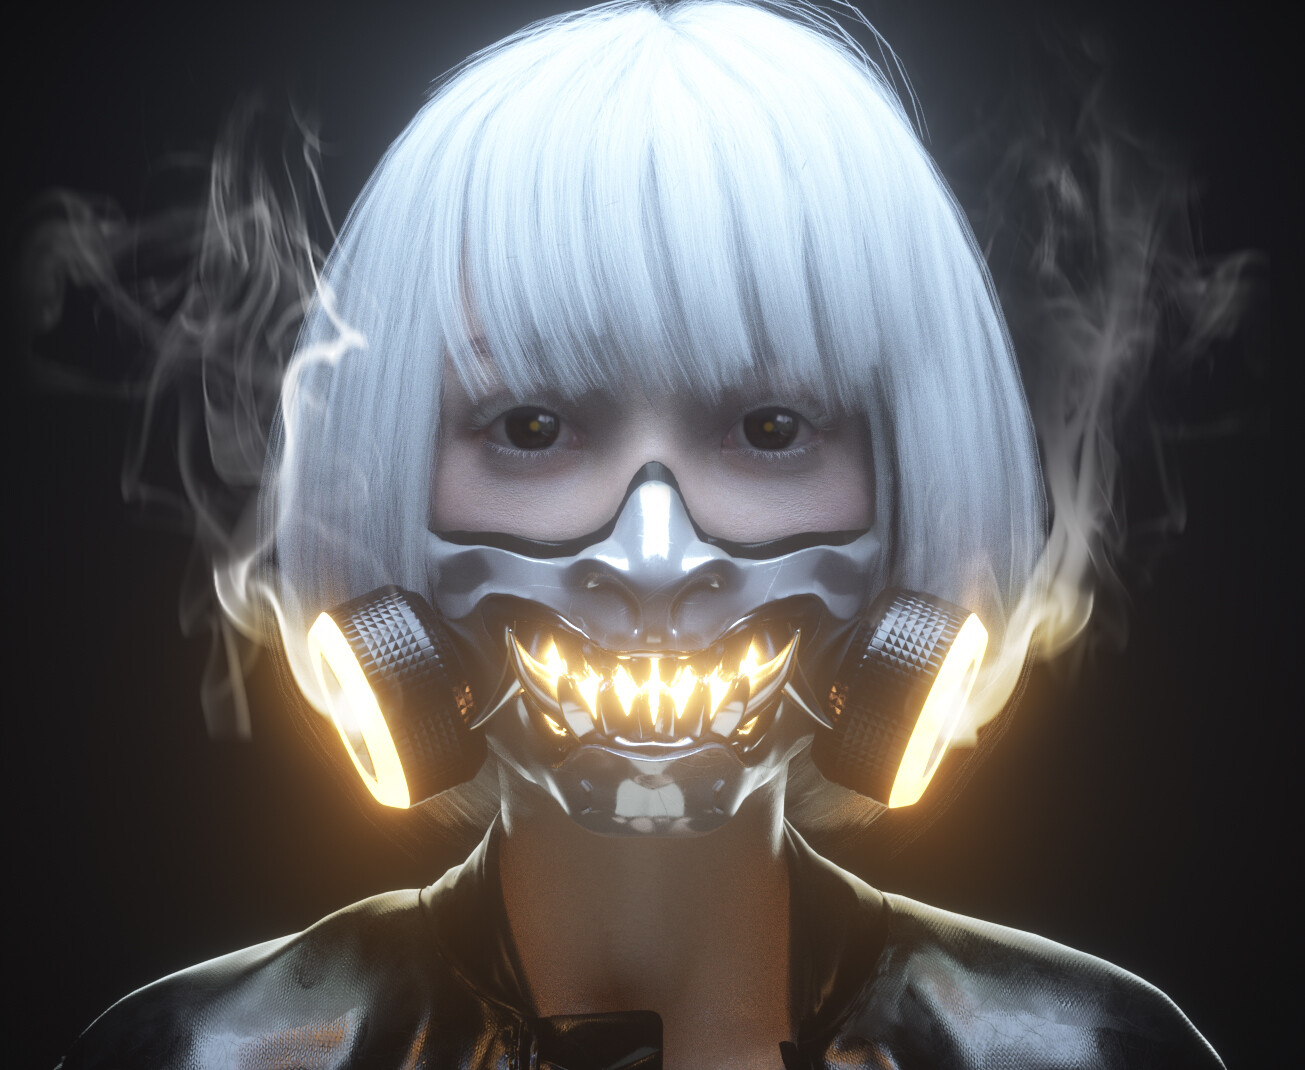 General 1305x1070 cyberpunk mask face digital art artwork dark eyes portrait smoke glowing fangs